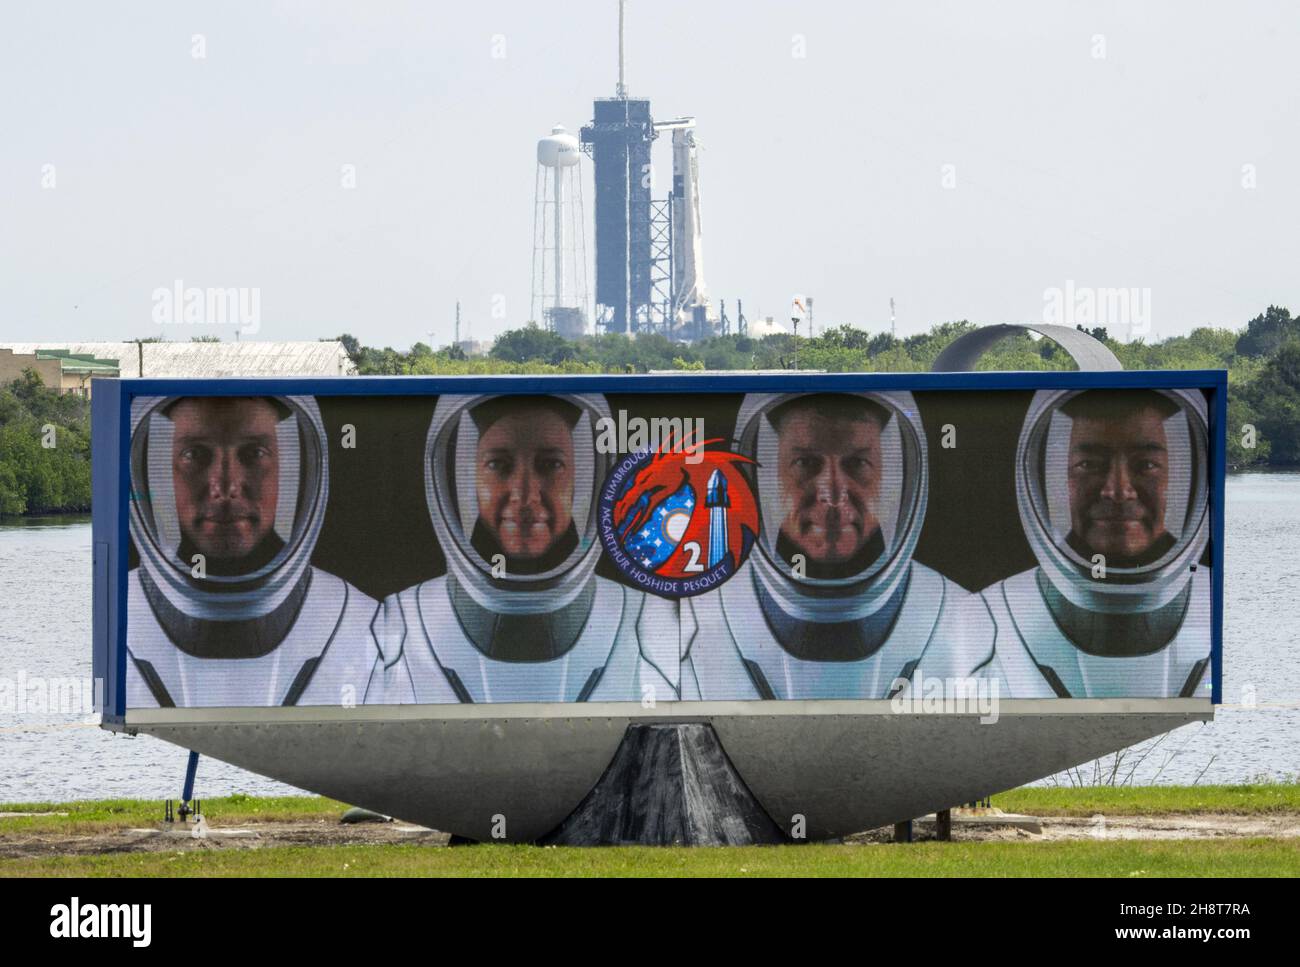 Kennedy Space Center, Stati Uniti. 2 dicembre 2021. Il razzo SpaceX NASA Crew-2 Falcon 9 poggia sul Launch Pad 39A dopo che la NASA ha annunciato un ritardo di un giorno al Kennedy Space Center, Florida, mercoledì 21 aprile 2021. Il conto alla rovescia mostra i quattro astronauti -- astronauti della NASA Shane Kimbrough e Meghan McArthur, Thomas Pesquet dell'Agenzia spaziale europea, e l'astronauta giapponese Akihiko Hoshide. Il lancio è previsto per venerdì 23 aprile 2021. Foto di Pat Benic/UPI Credit: UPI/Alamy Live News Foto Stock